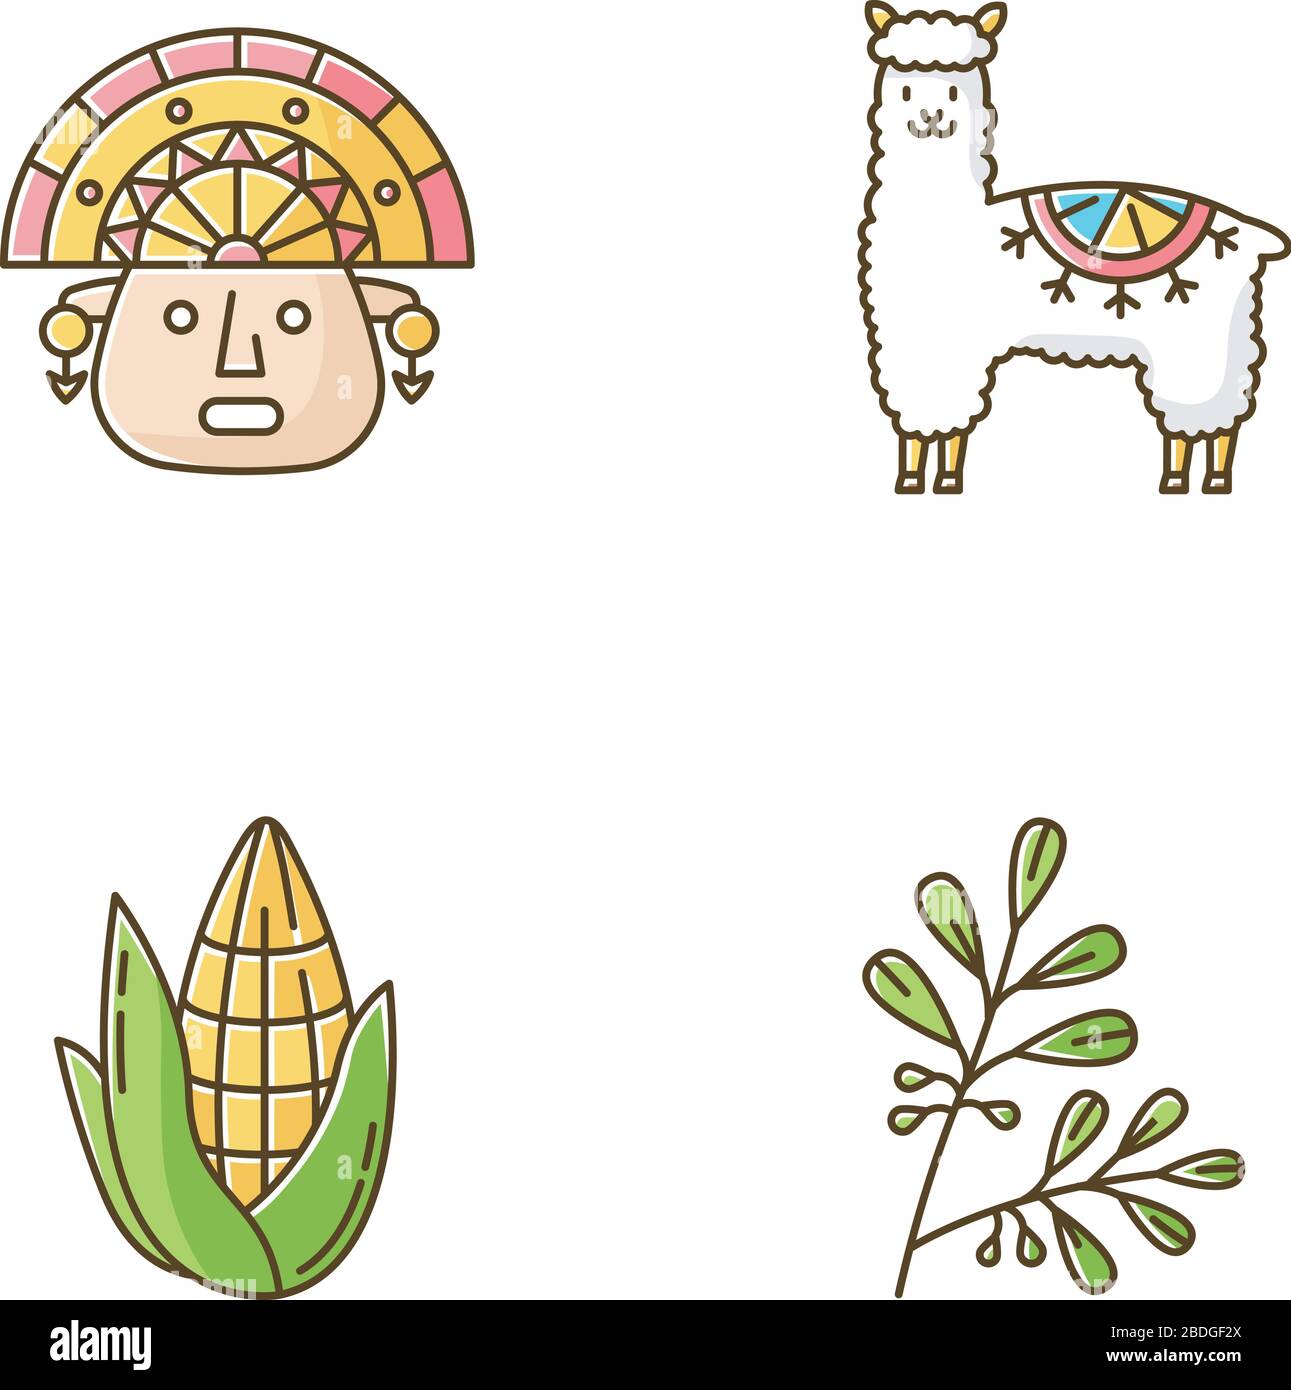 Icone colore RGB Perù impostate. Caratteristiche del paese andino. Alpaca, incas, mais, coca. Storia degli Incas e tradizioni di vita. Costumi peruviani. Viaggiando in Sud Illustrazione Vettoriale